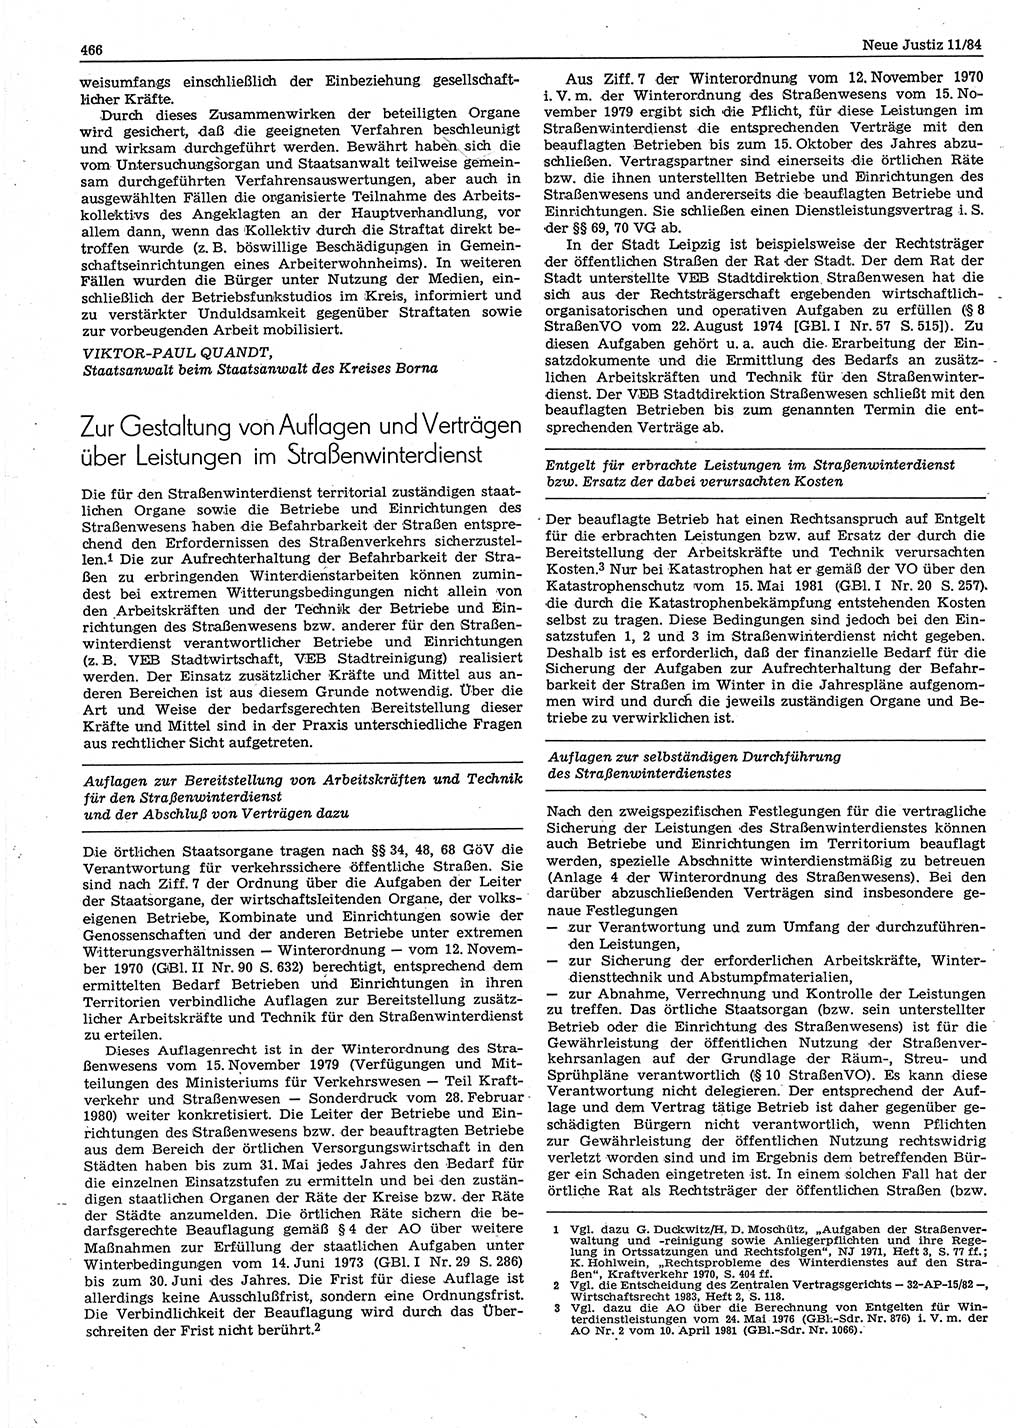 Neue Justiz (NJ), Zeitschrift für sozialistisches Recht und Gesetzlichkeit [Deutsche Demokratische Republik (DDR)], 38. Jahrgang 1984, Seite 466 (NJ DDR 1984, S. 466)